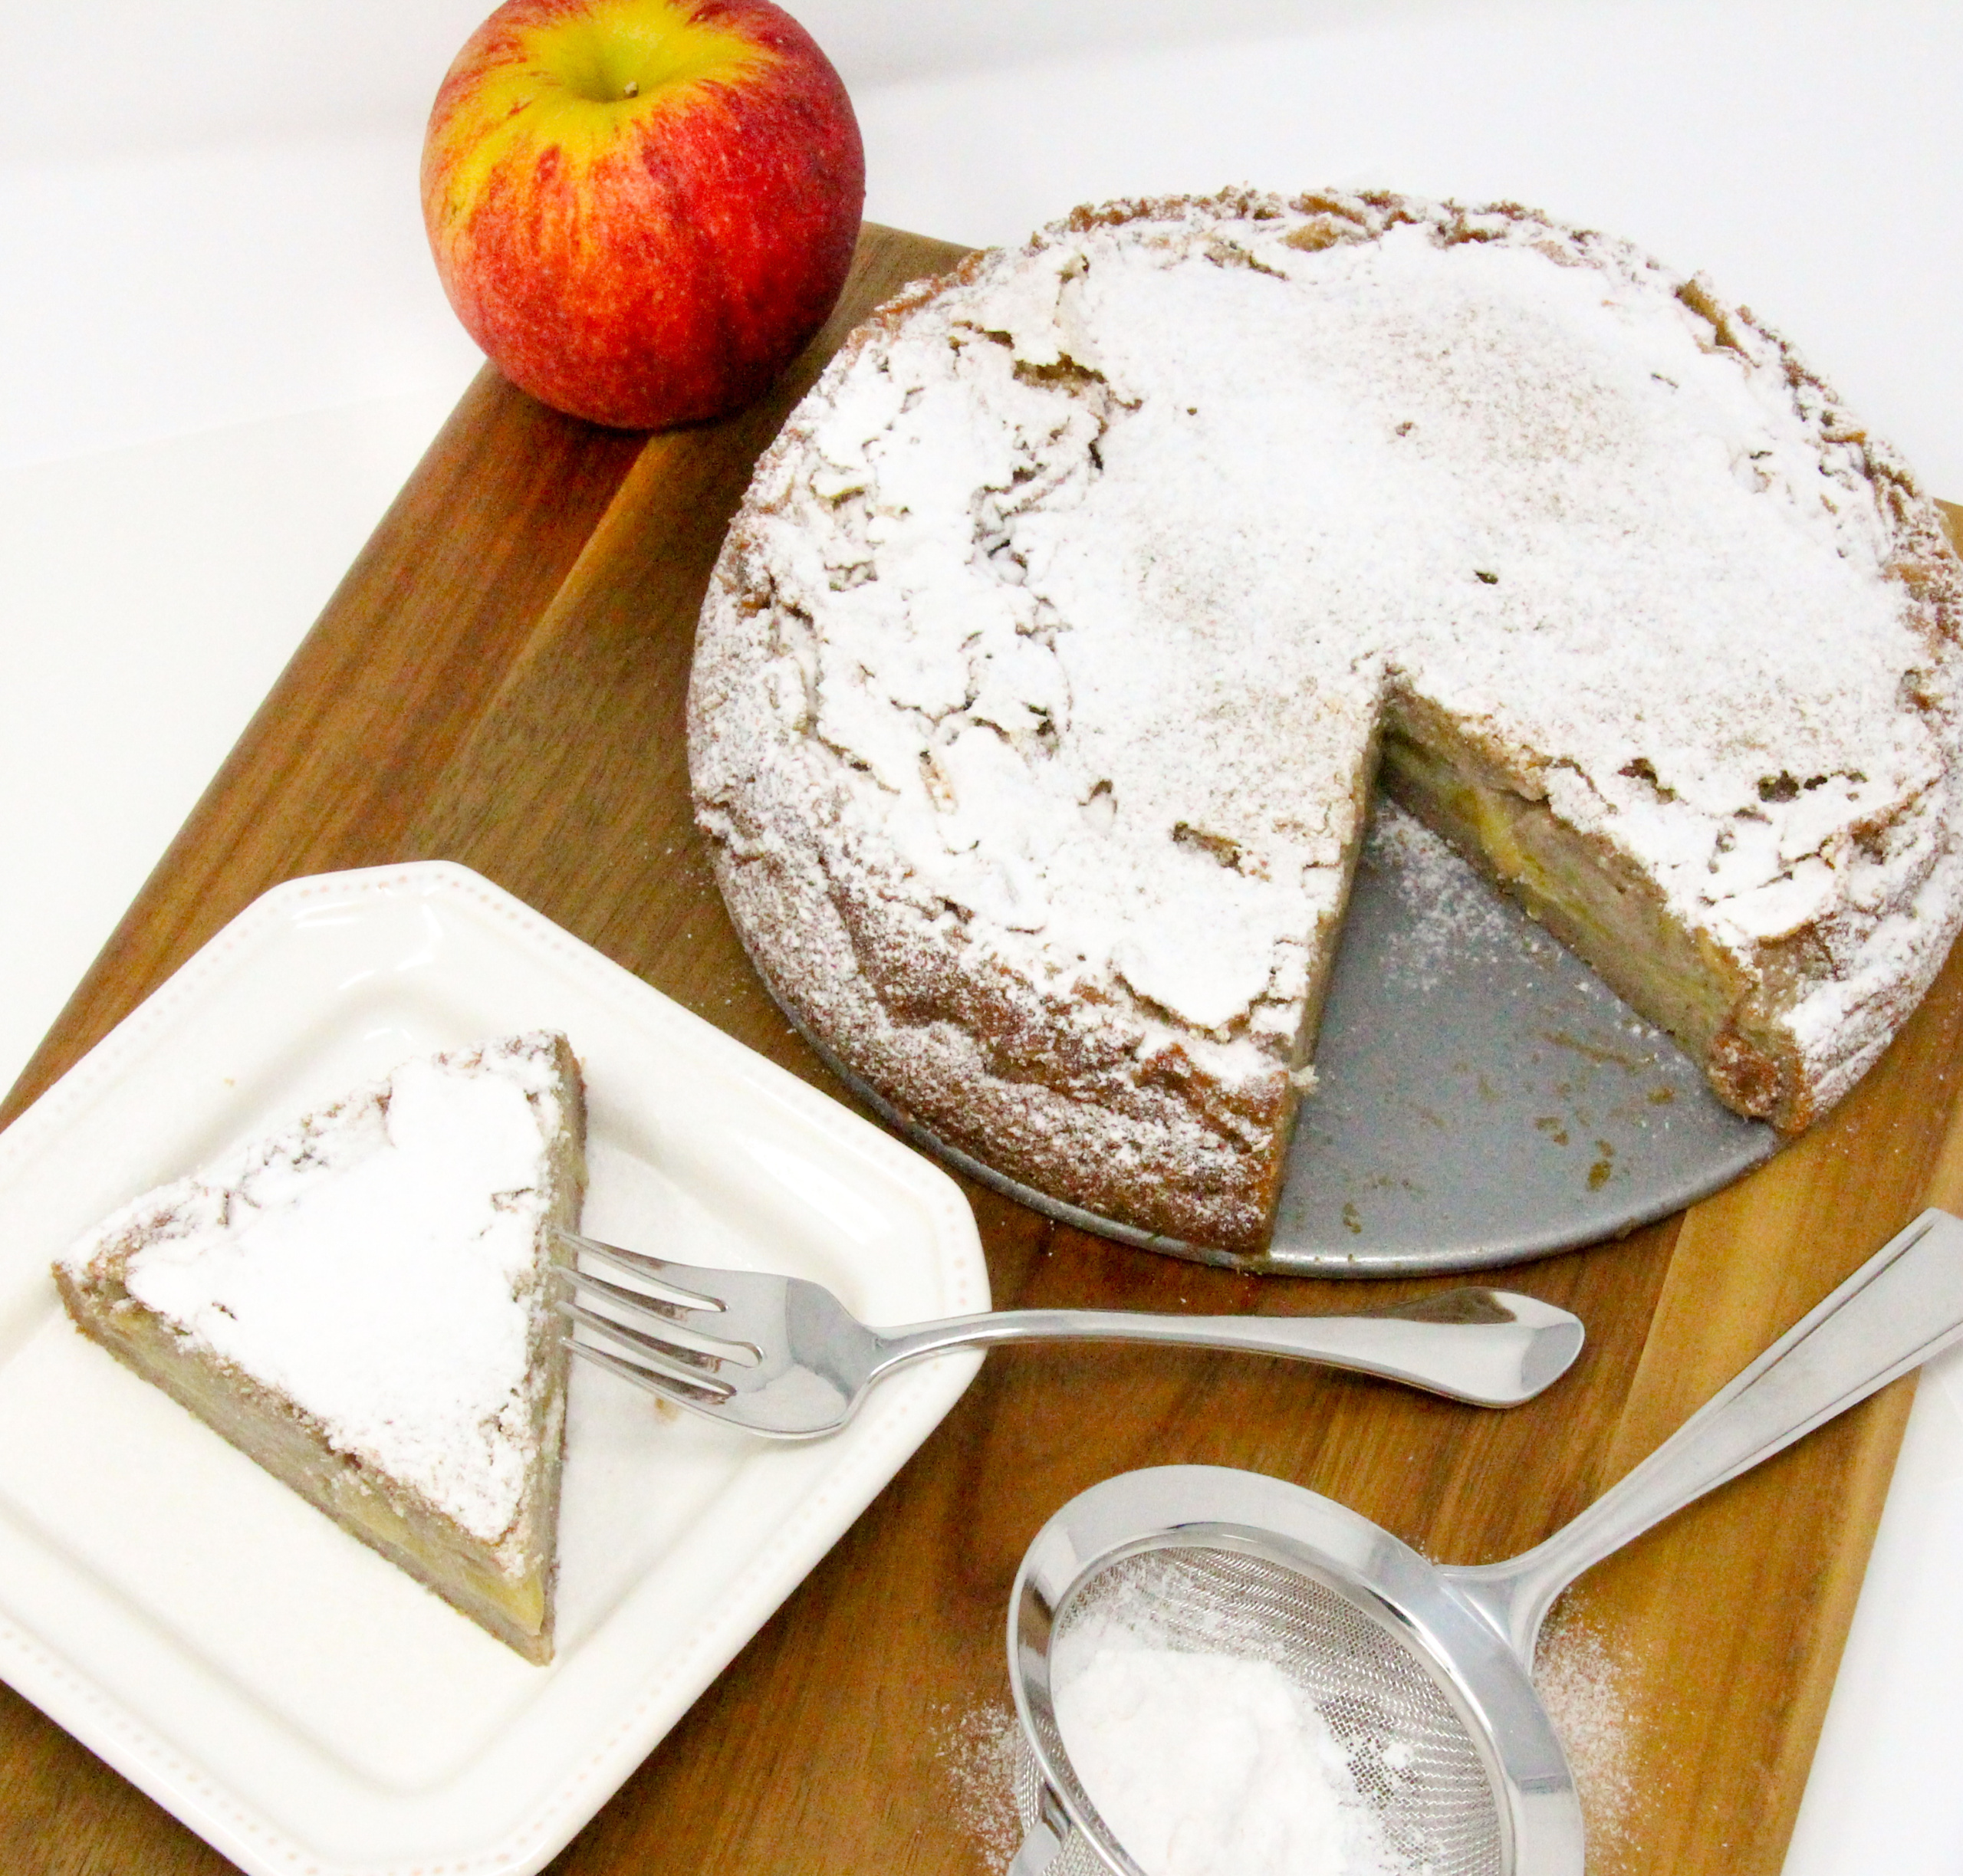 Best Irish Apple Cake Recipe - How To Make Irish Apple Cake